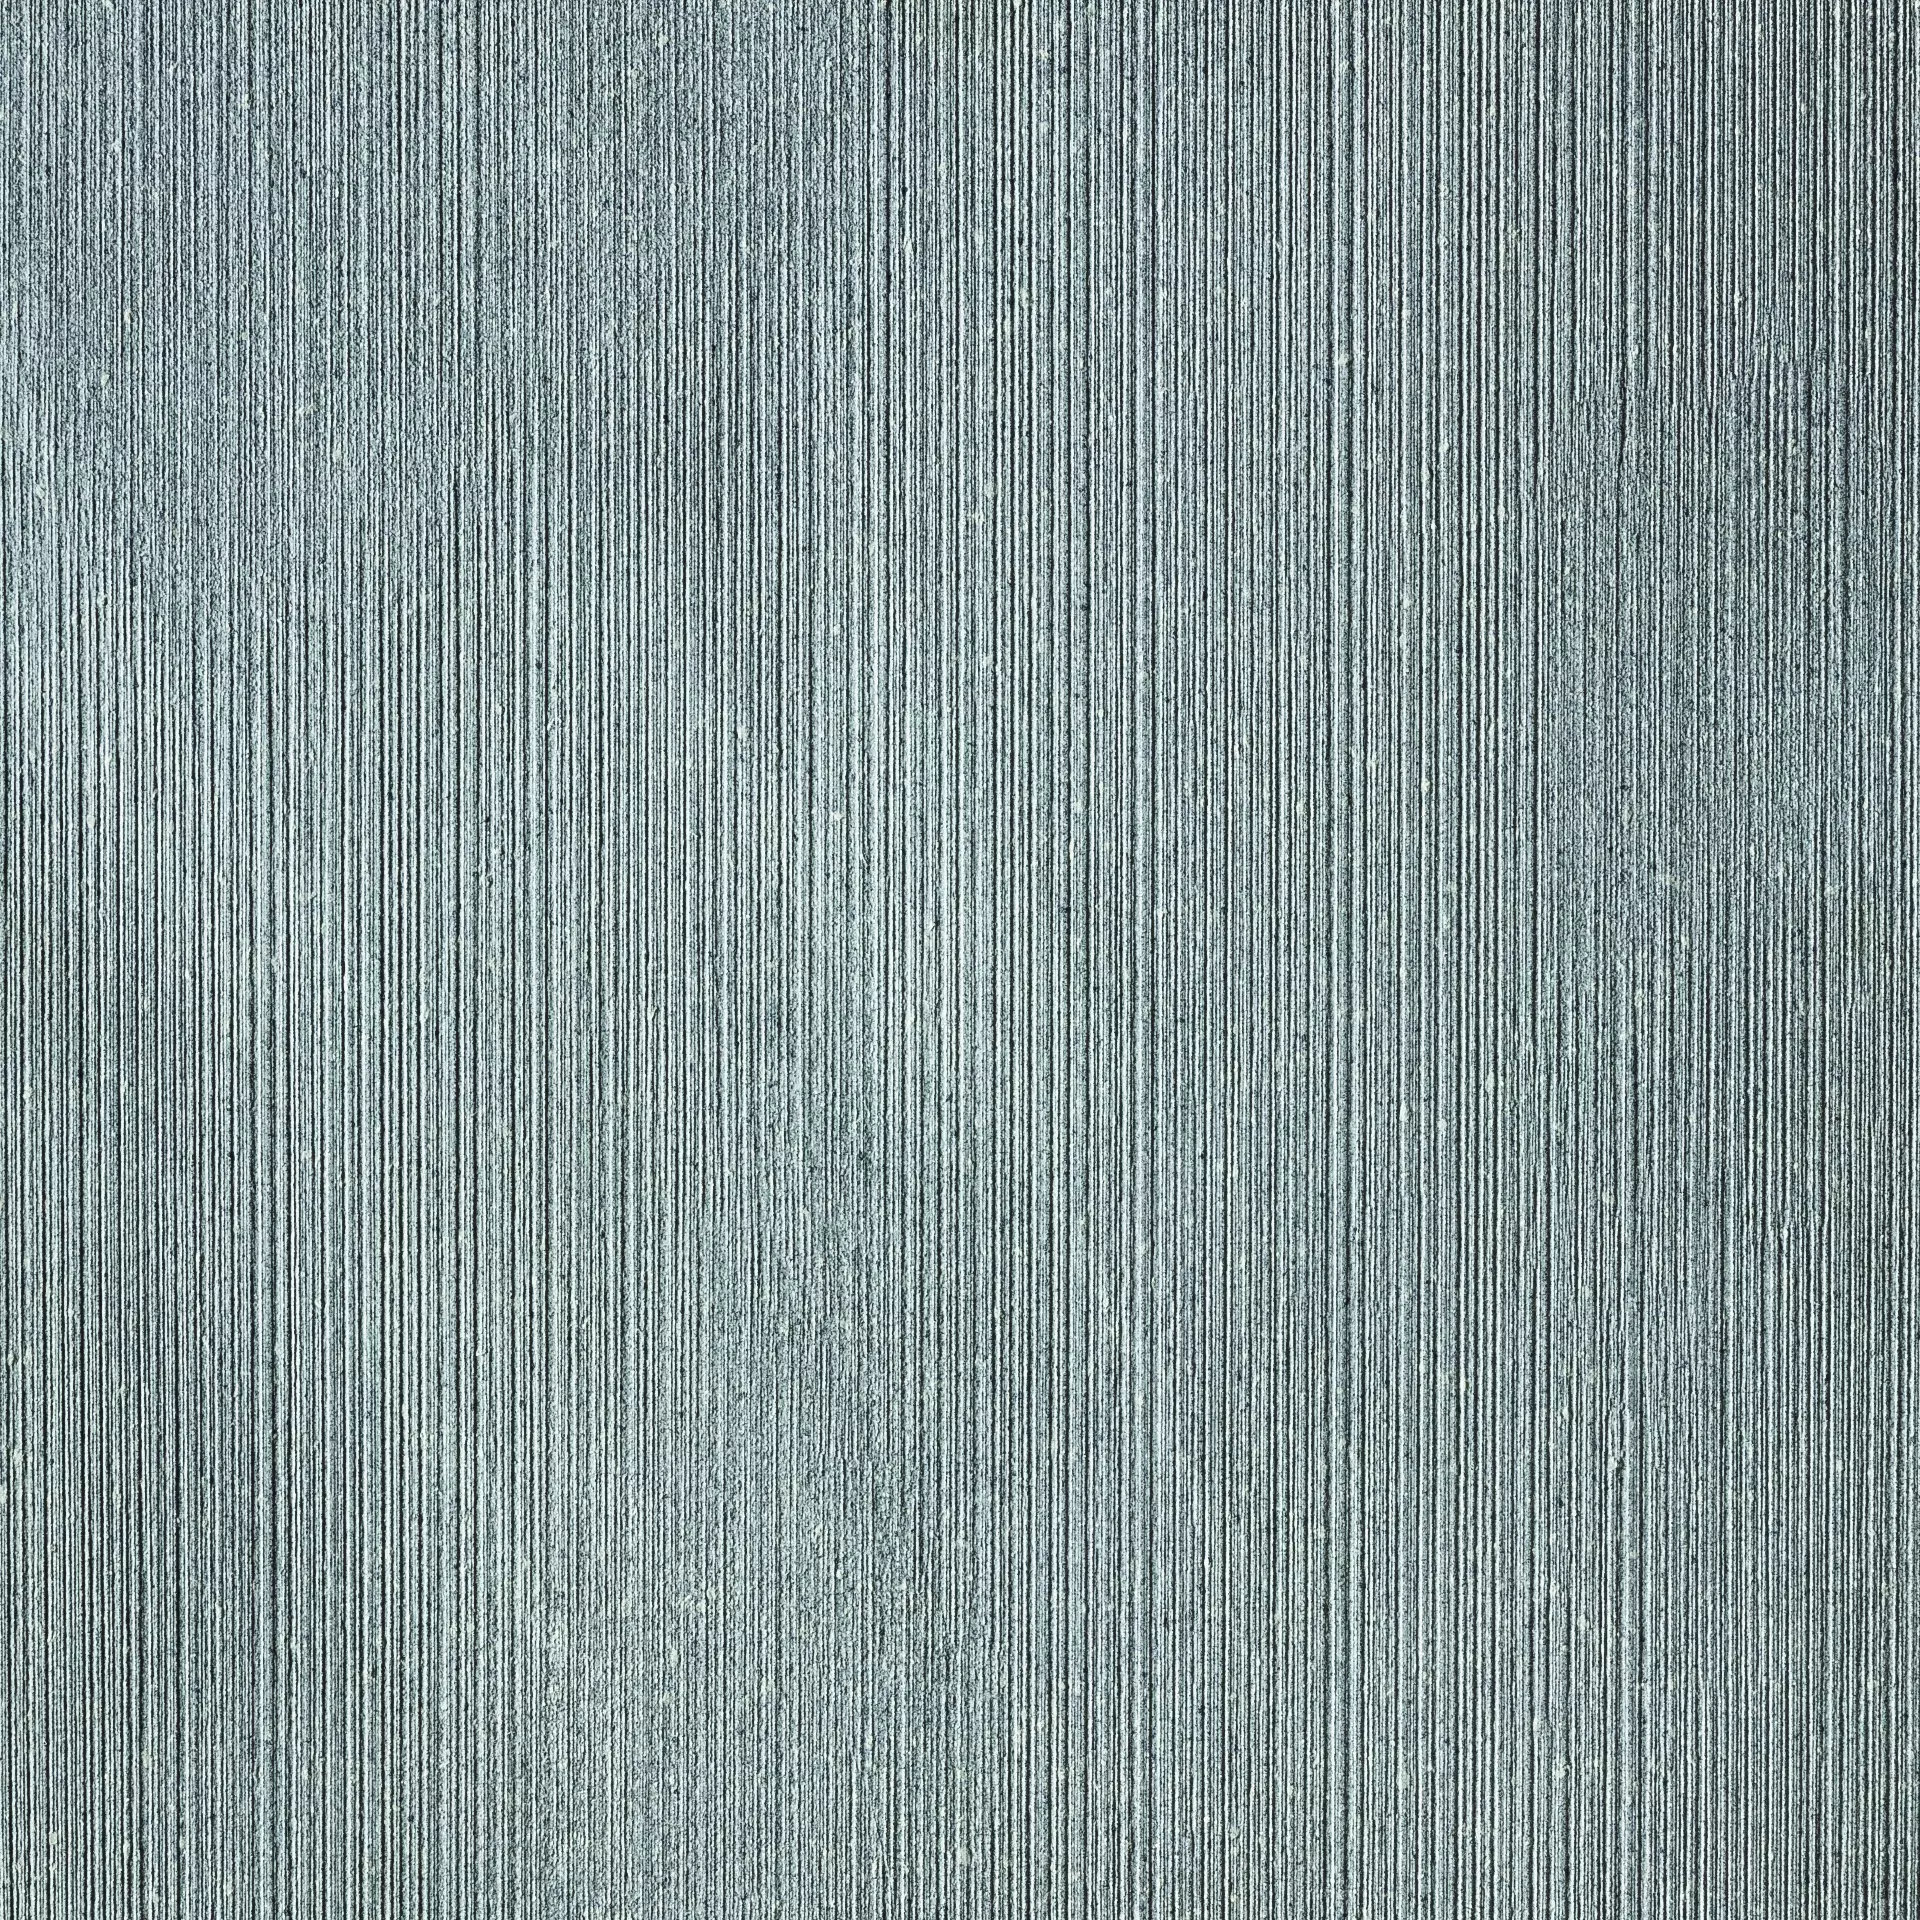 Rak Curton Grey Natural – Matt Grey A2D06PDCNGRYMMLN1R natur matt 60x60cm Decor Line rektifiziert 9mm